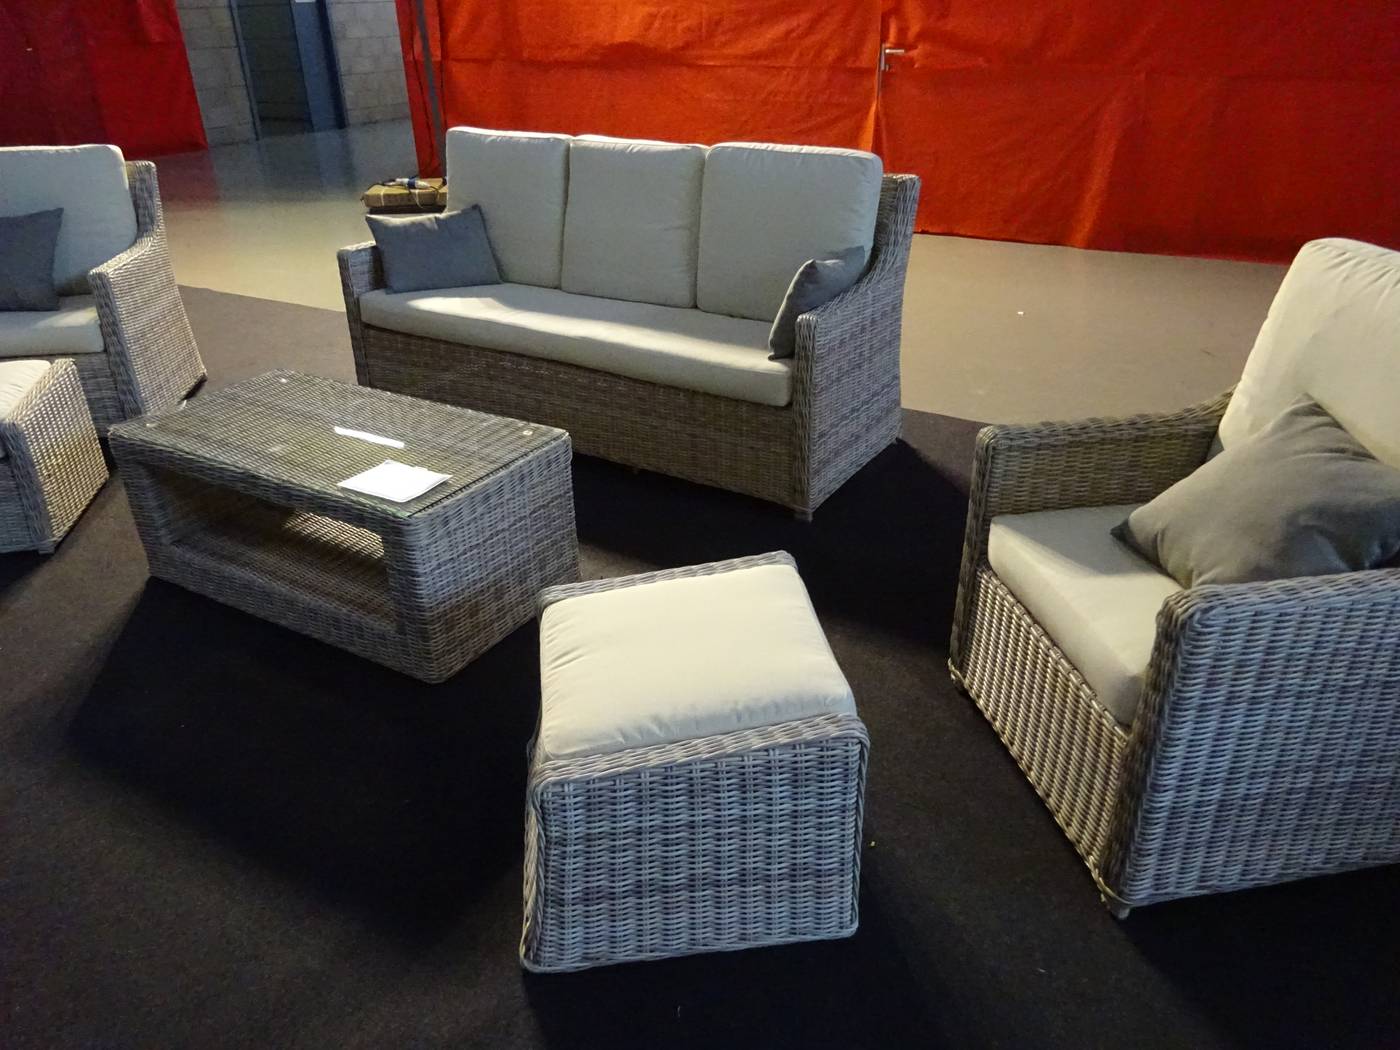 Set Médula Luxe Ainoha-10 - 1 sofá de 3 plazas + 2 sillones + 1 mesa de centro + 2 reposapiés + cojines